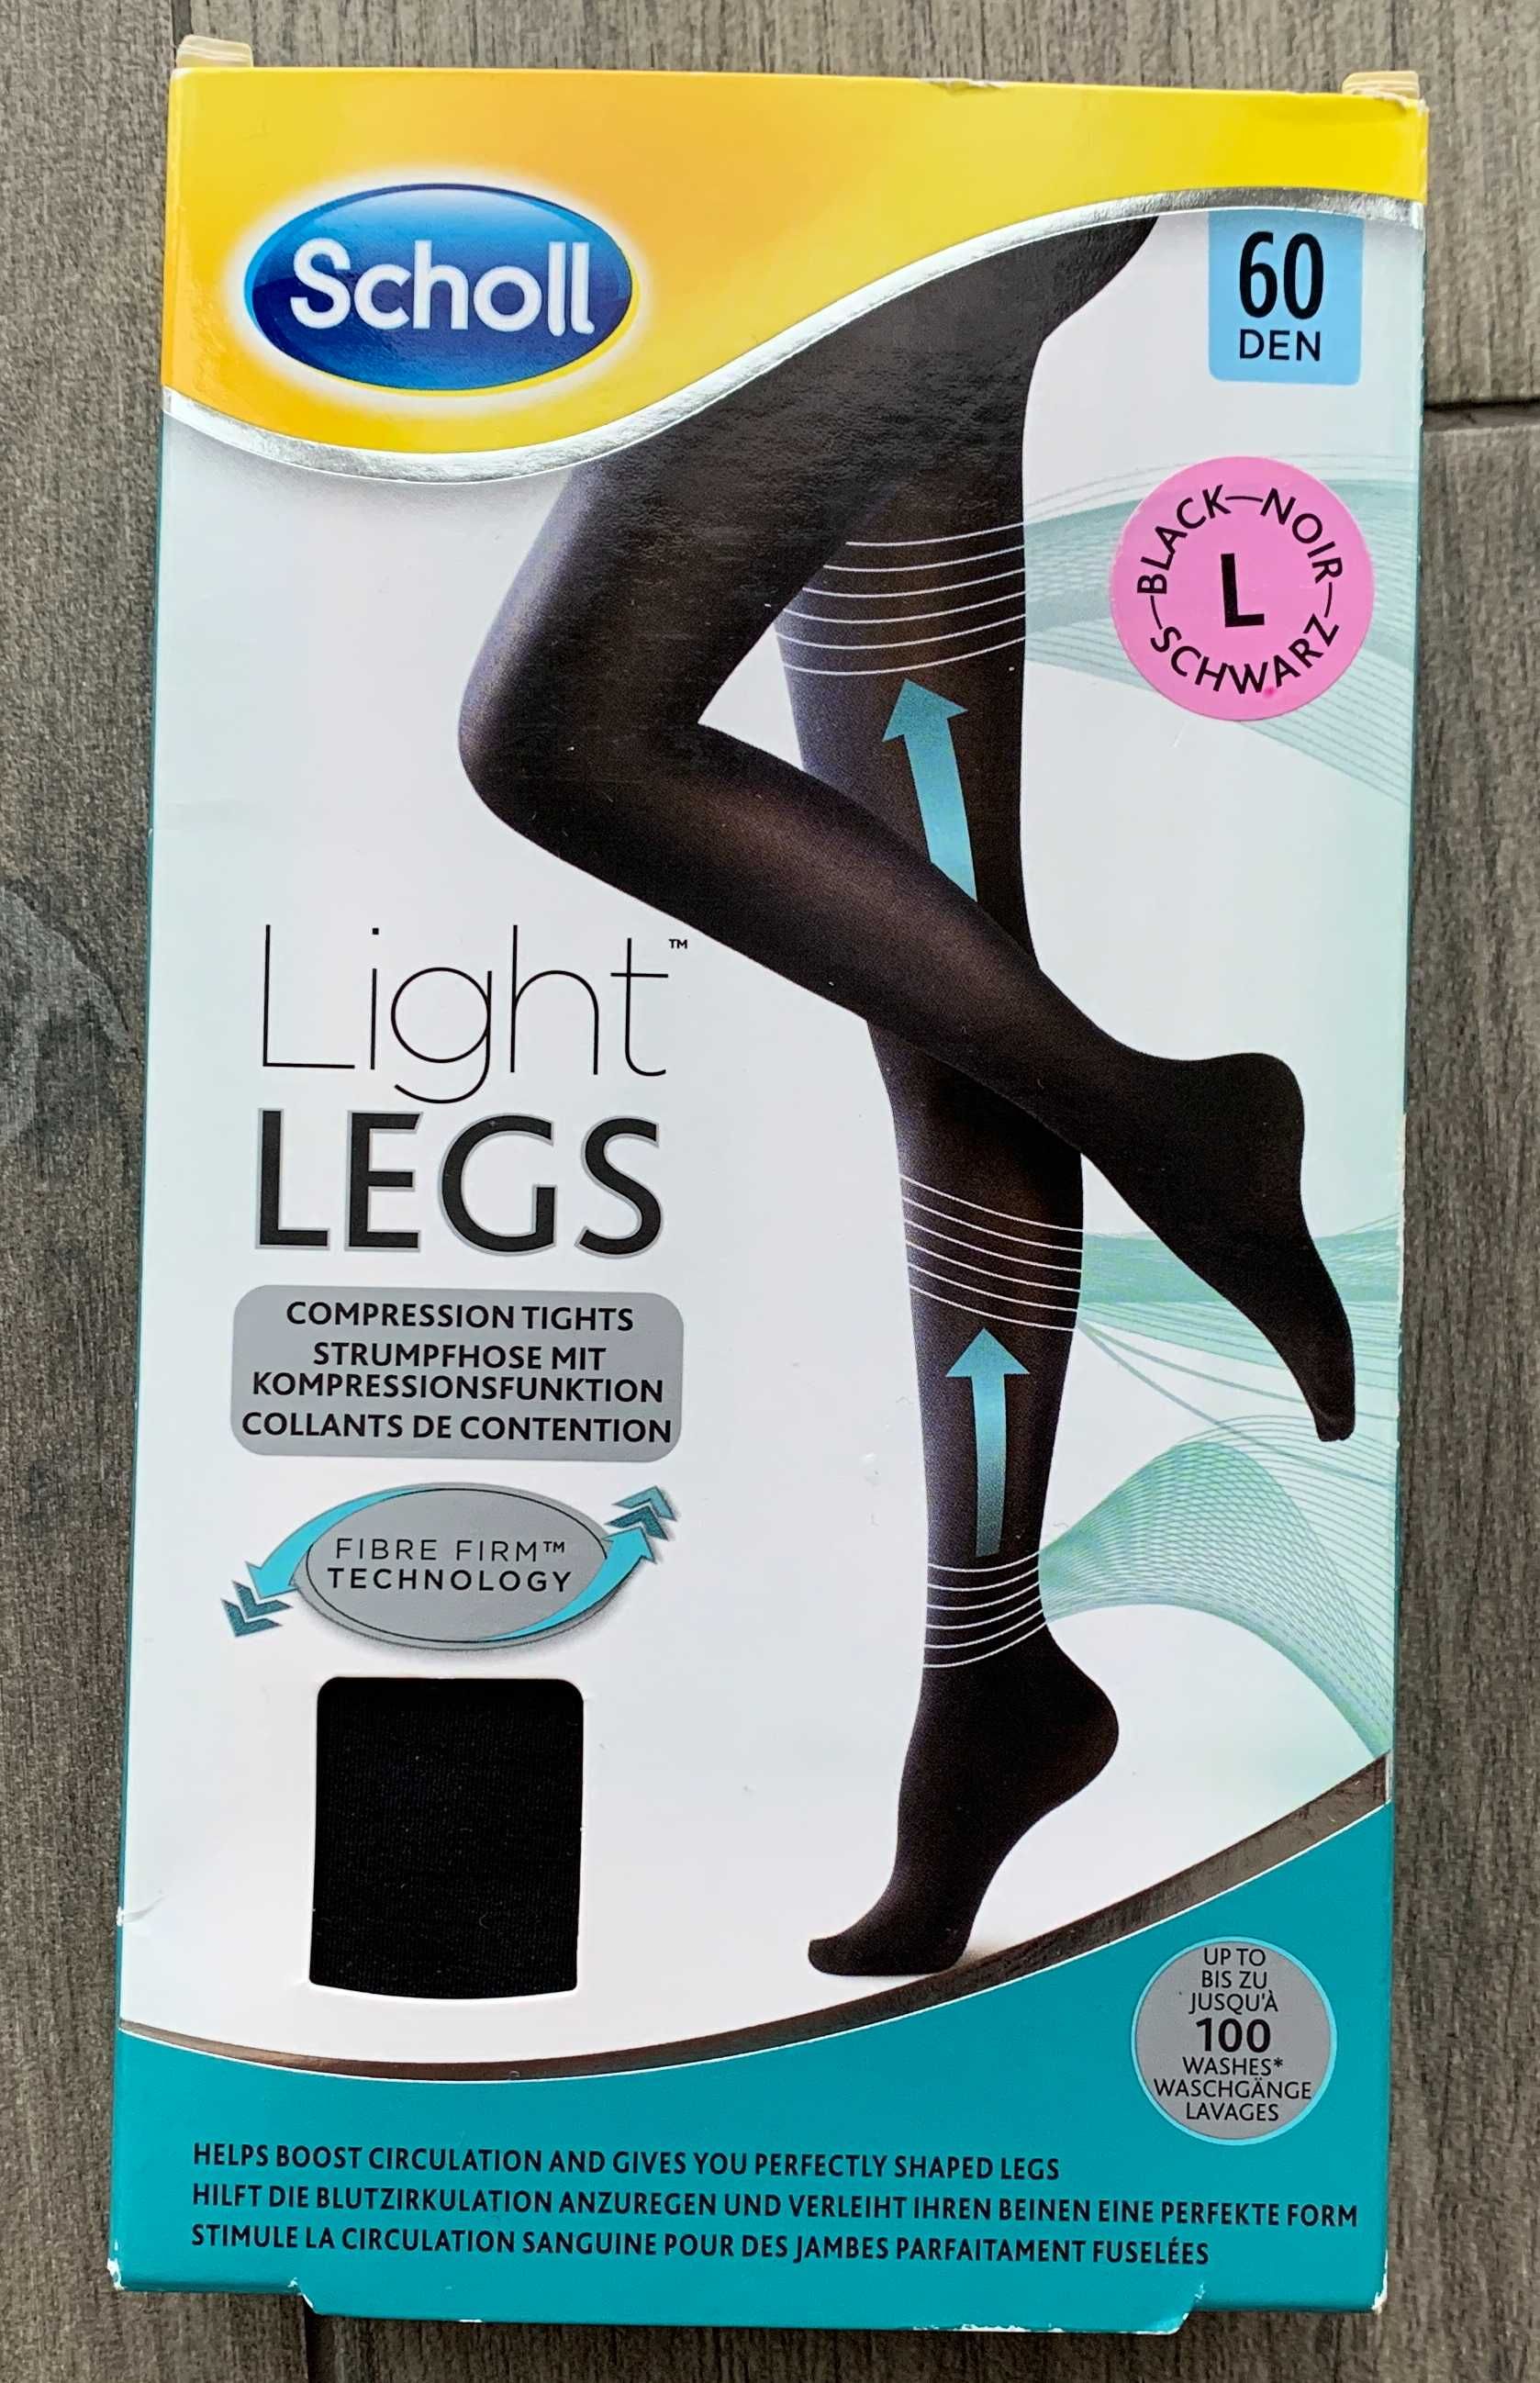 SHOLL Light Legs 60 Den Размер L Колготки Компрессионные Черные